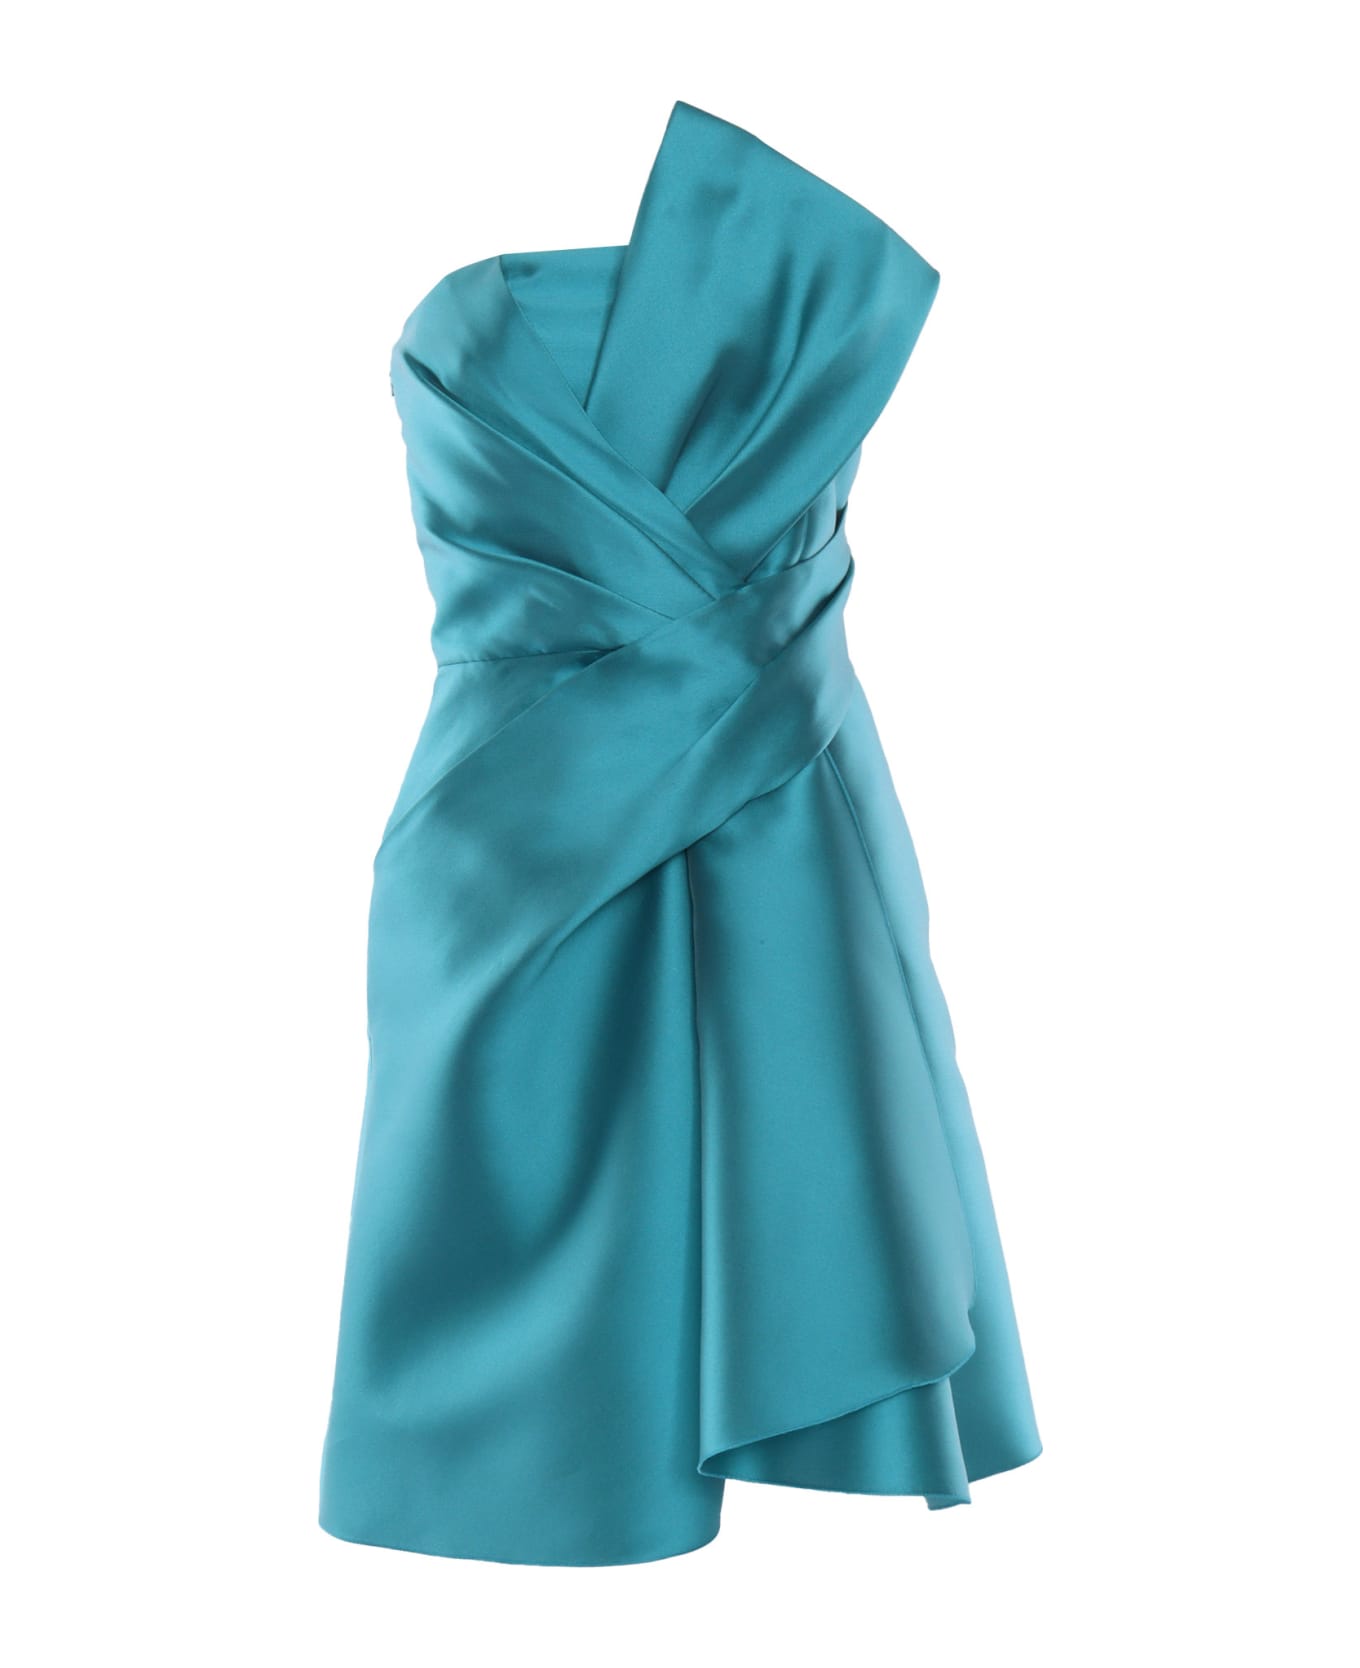 Alberta Ferretti Short Turquoise Dress - LIGHT BLUE ニットウェア